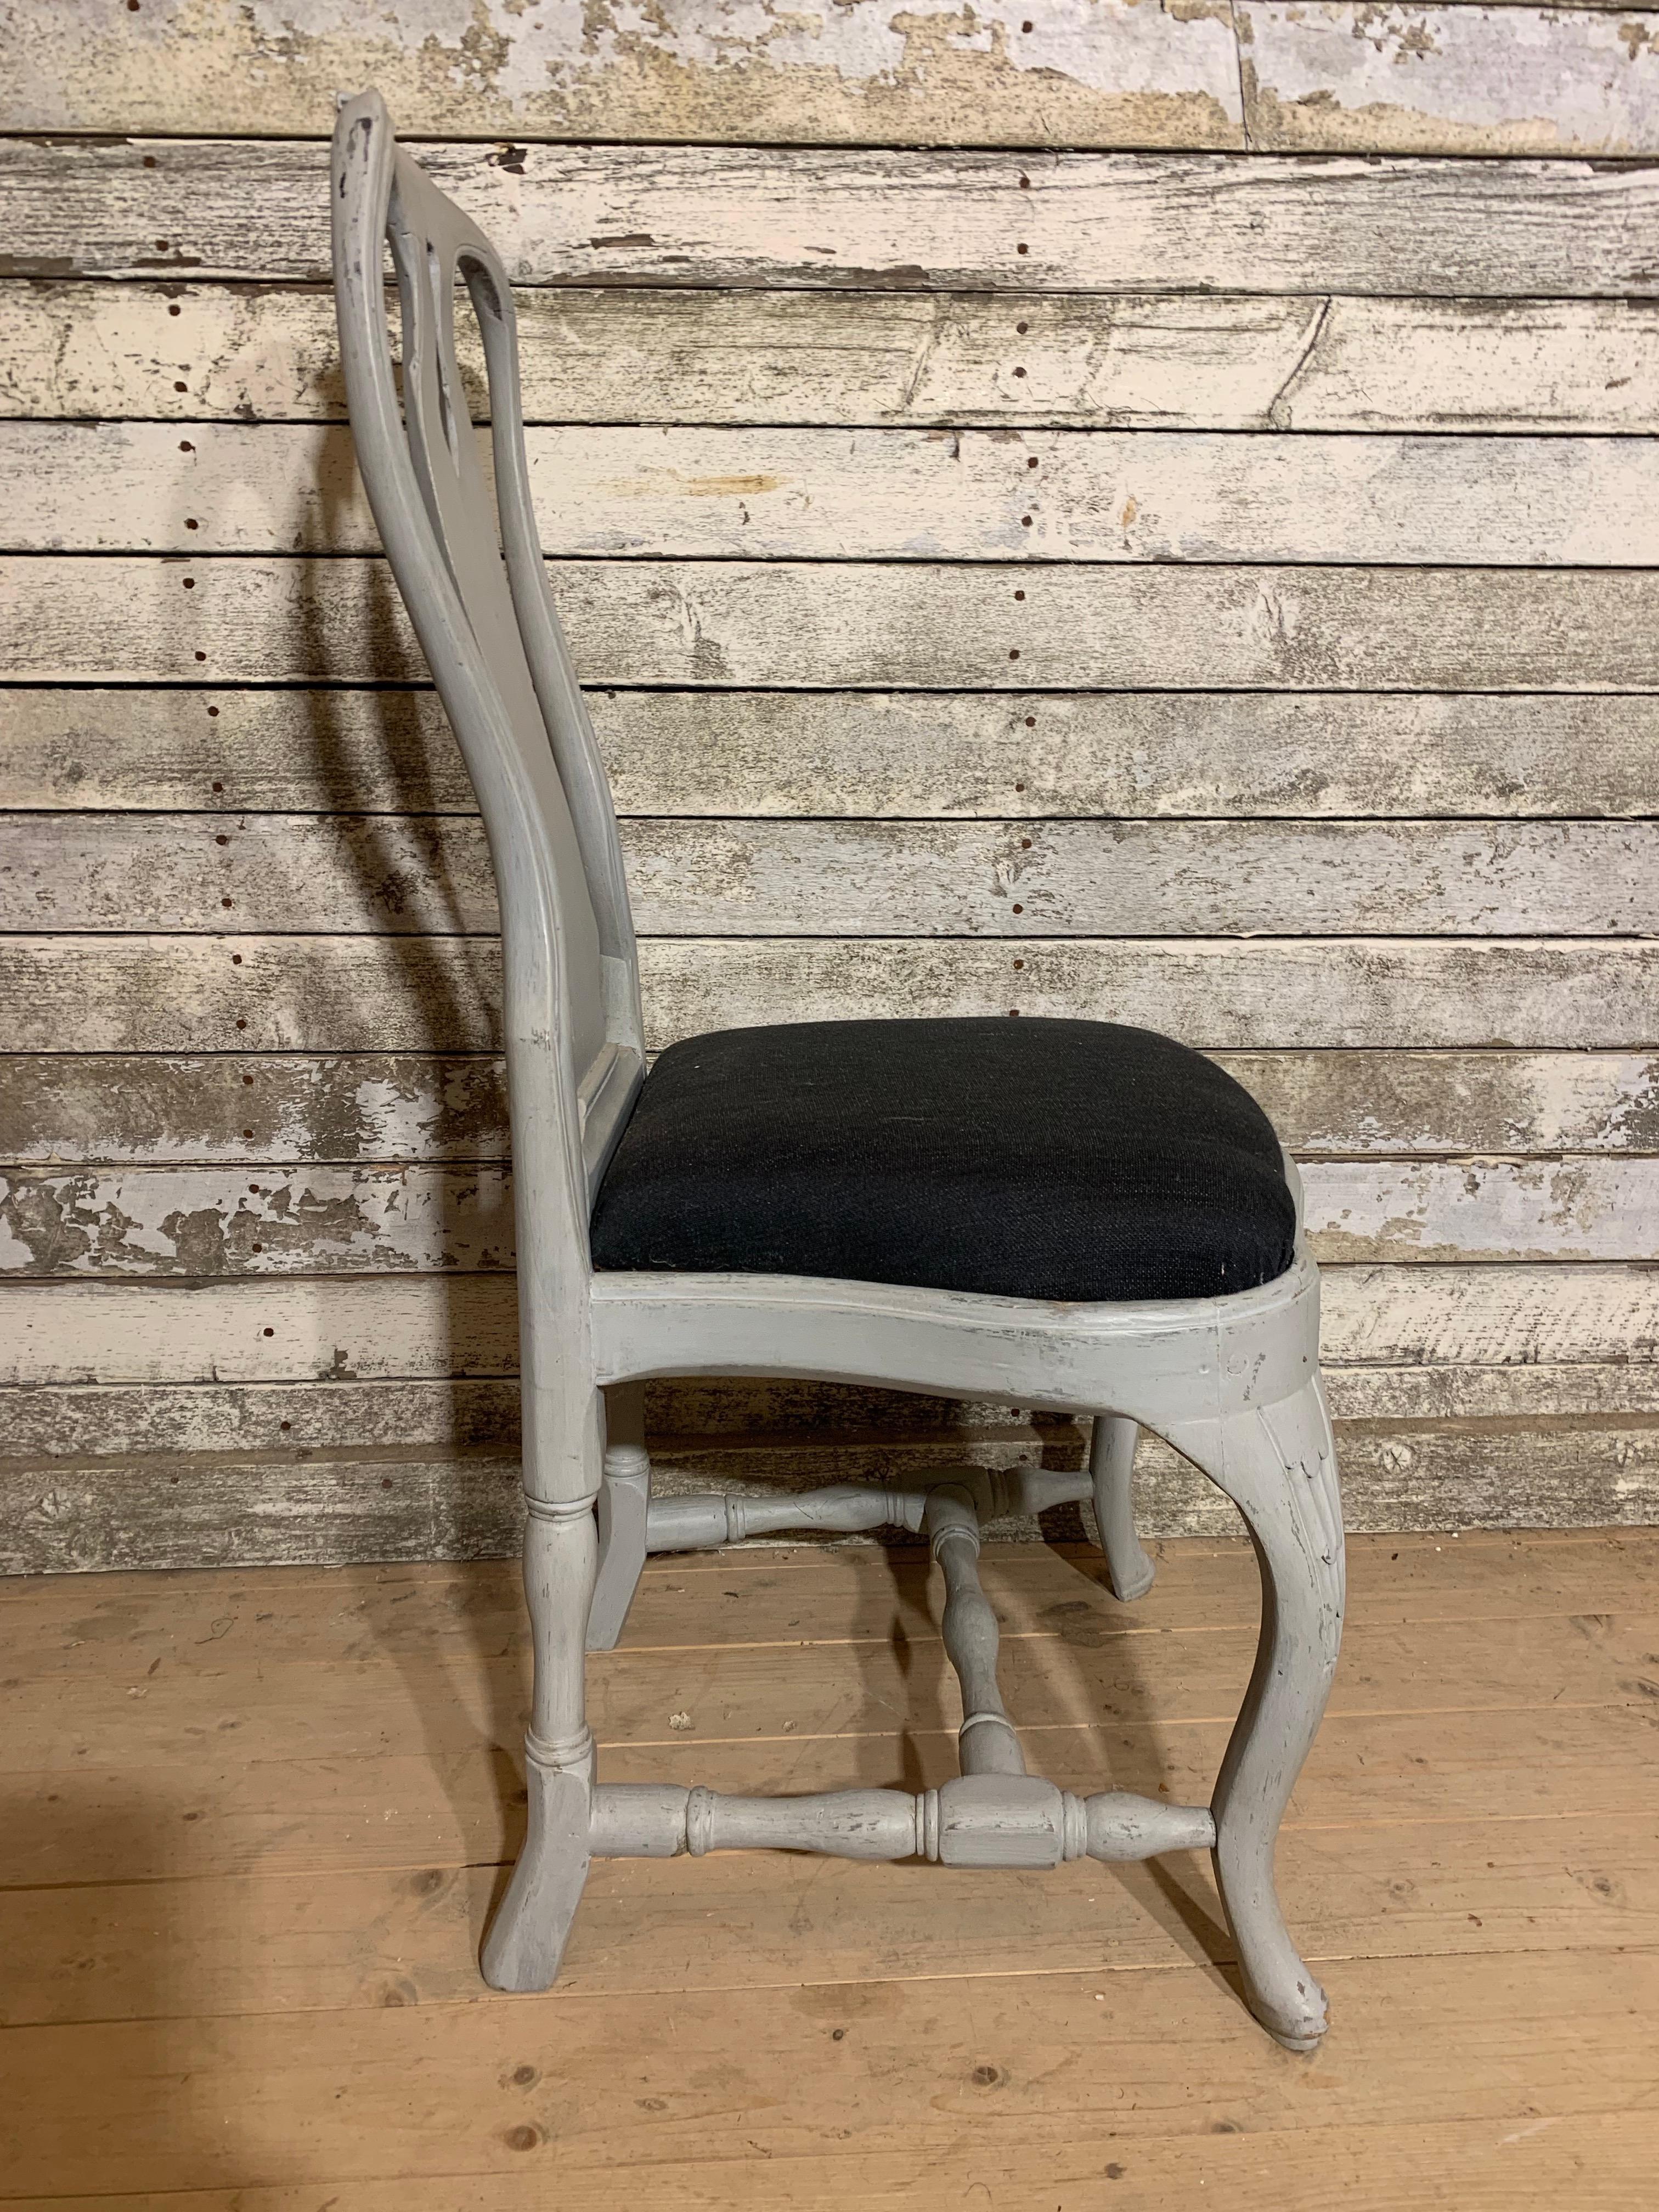 Eine Reihe von  10 ähnliche Rokoko-Stühle, hergestellt in Stockholm, um 1770. Die Stühle sind aus Erle gefertigt, einem sehr leichten Holz. 

In Stockholm haben sie Stühle hergestellt, die sehr ähnlich sind und die beste Qualität haben. Die hohe